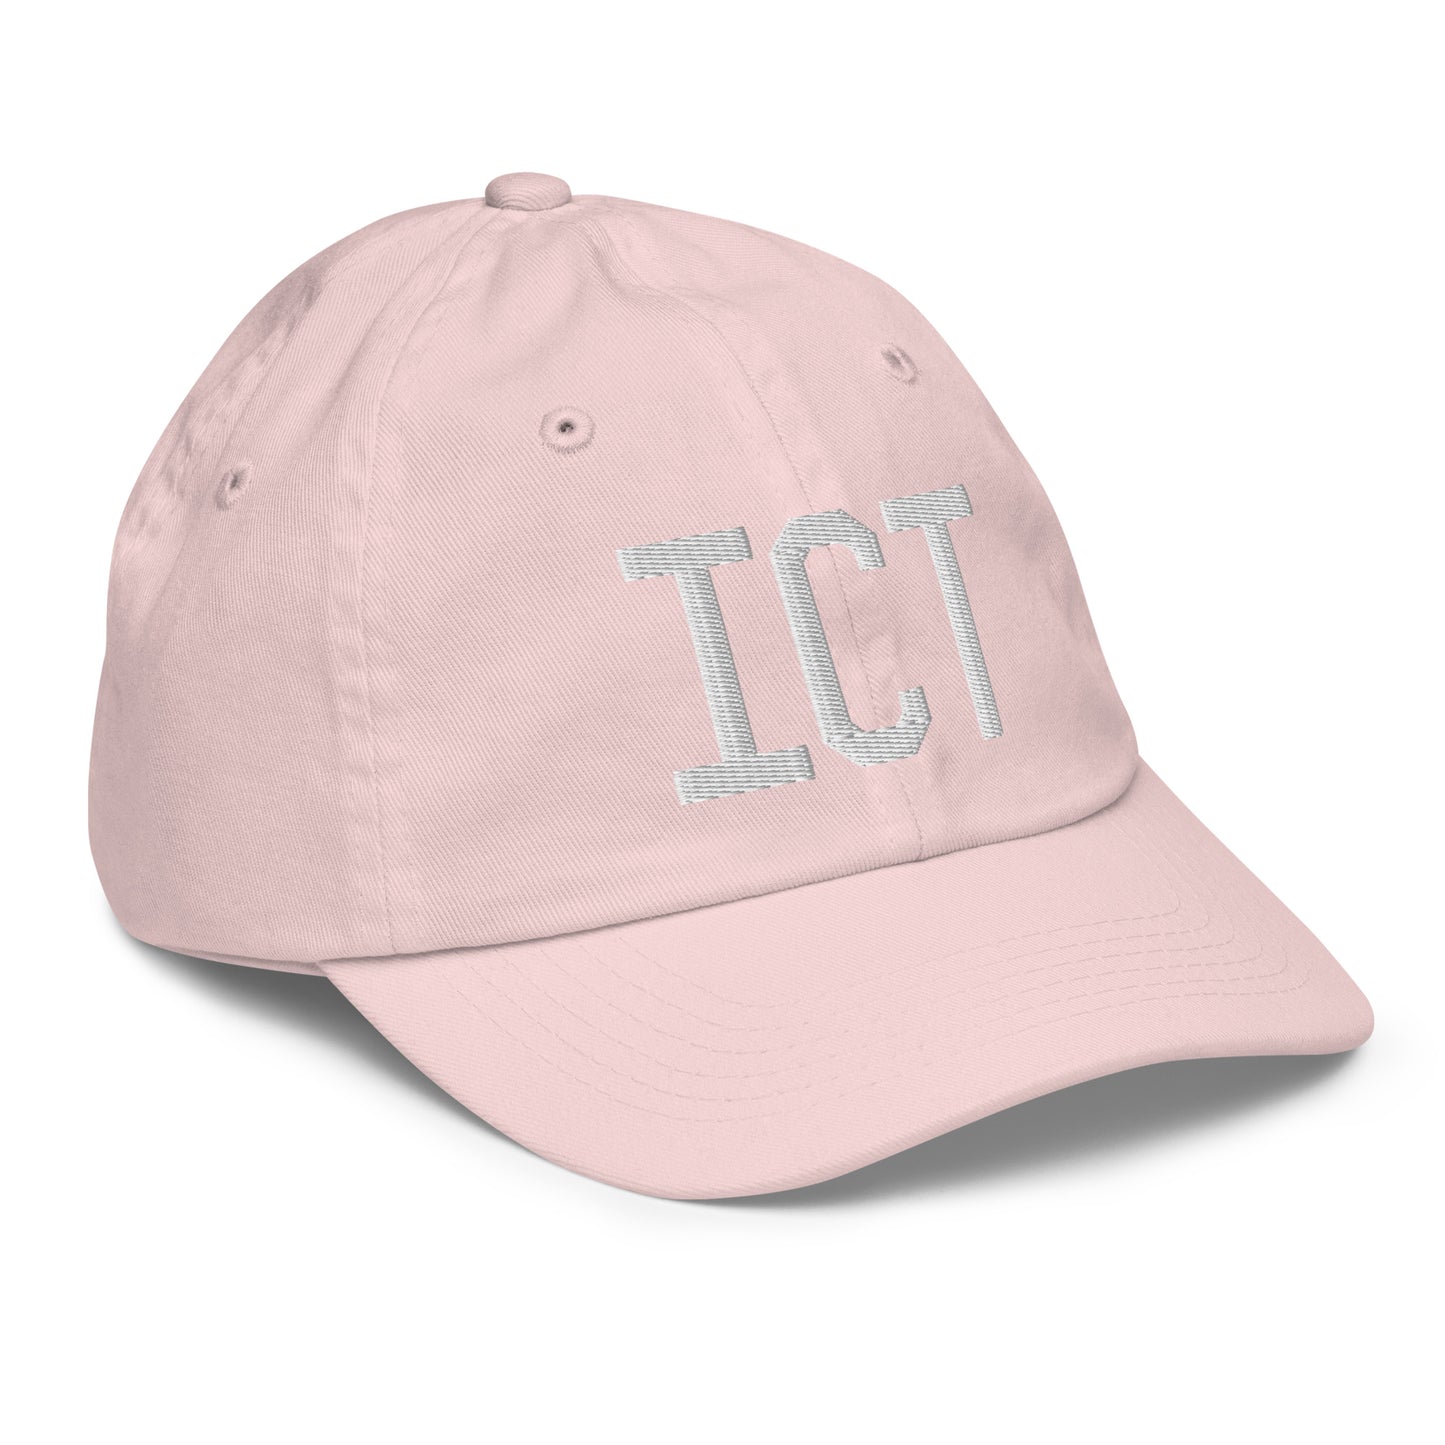 Airport Code Kid's Baseball Cap - White • ICT Wichita • YHM Designs - Image 32